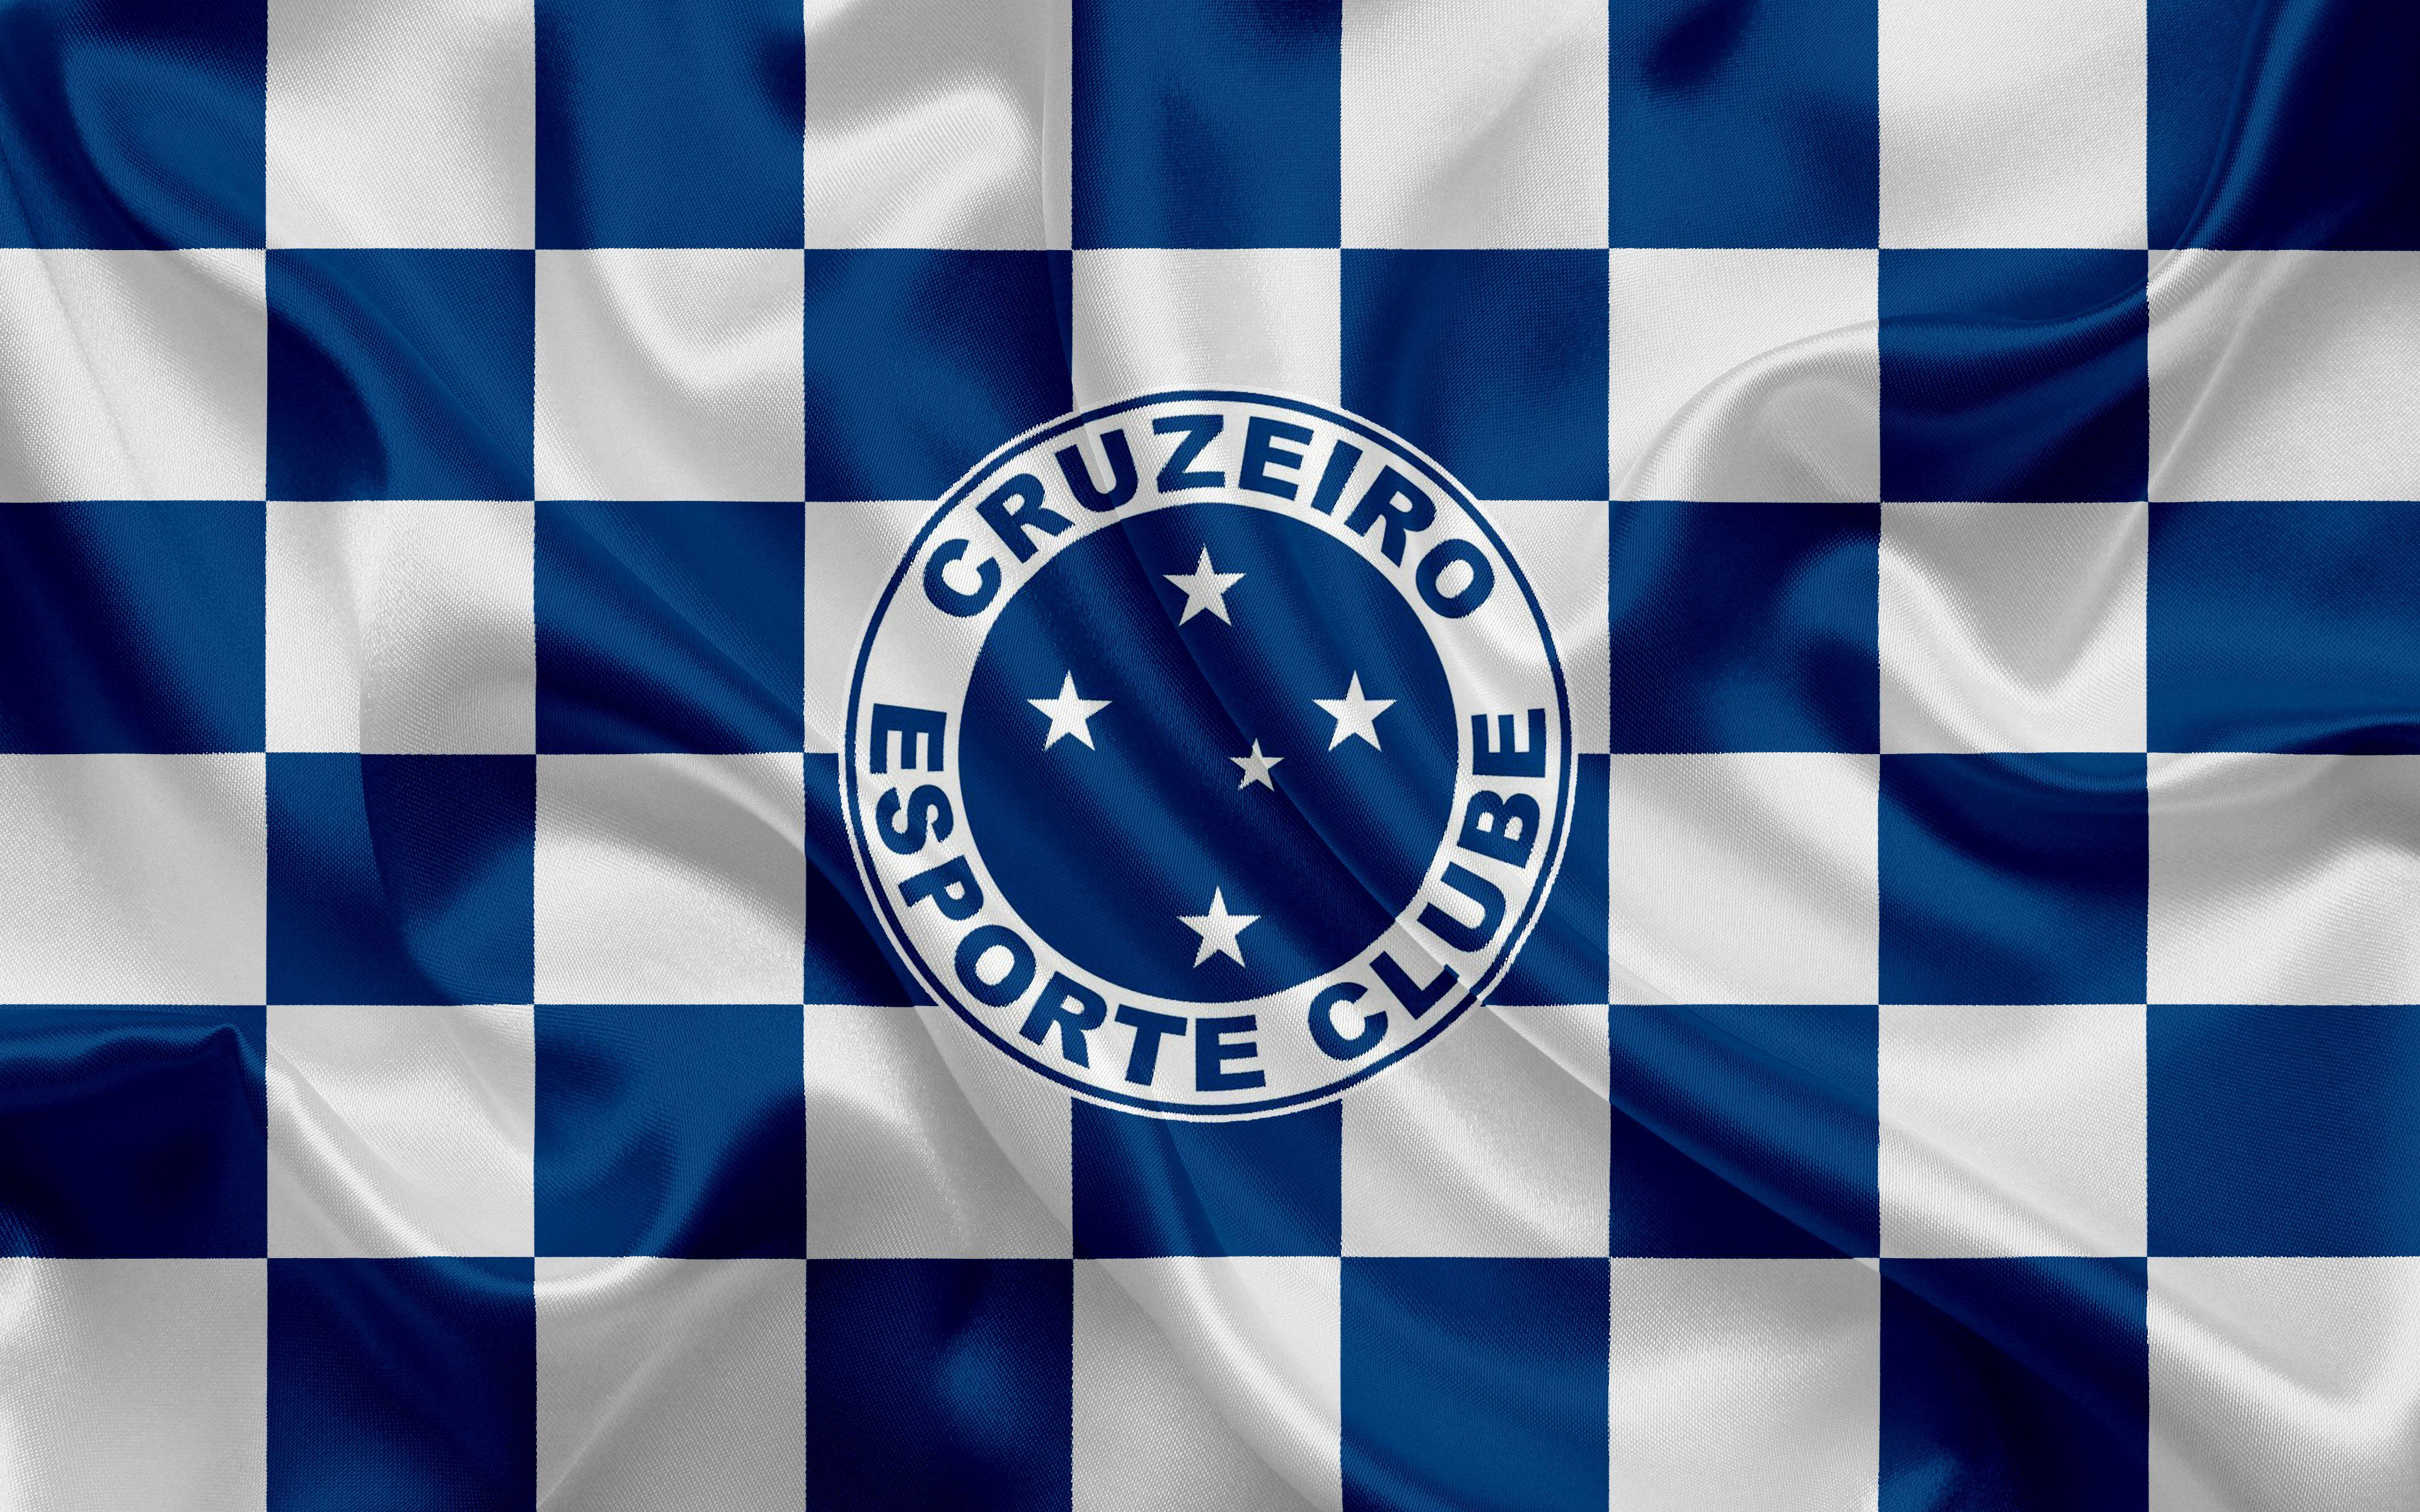 Cruzeiro Esporte Clube Wallpapers - Top Free Cruzeiro Esporte Clube